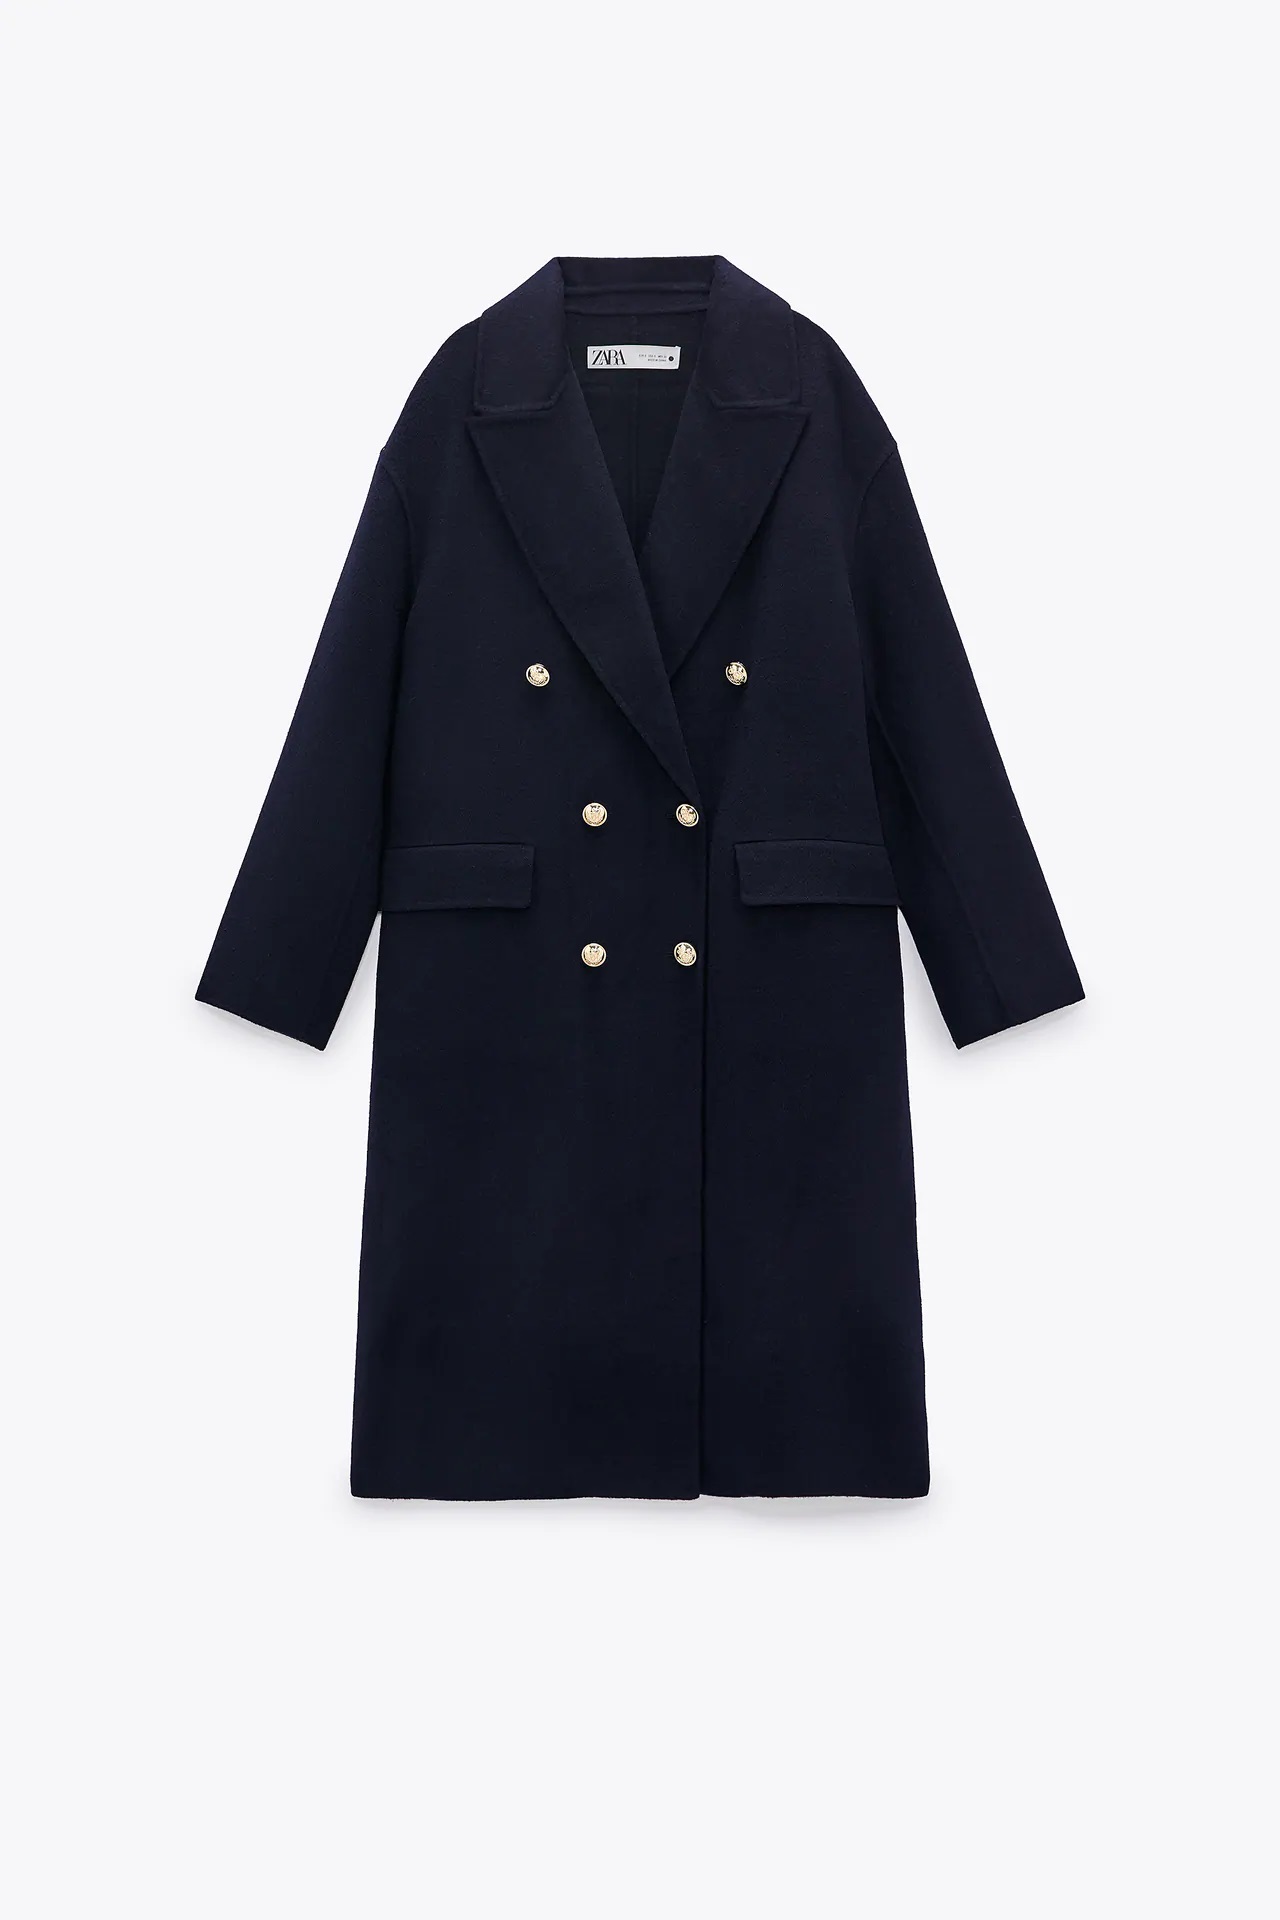 Zara: El gran chollo, un abrigo lana cruzado con un descuento del 50%